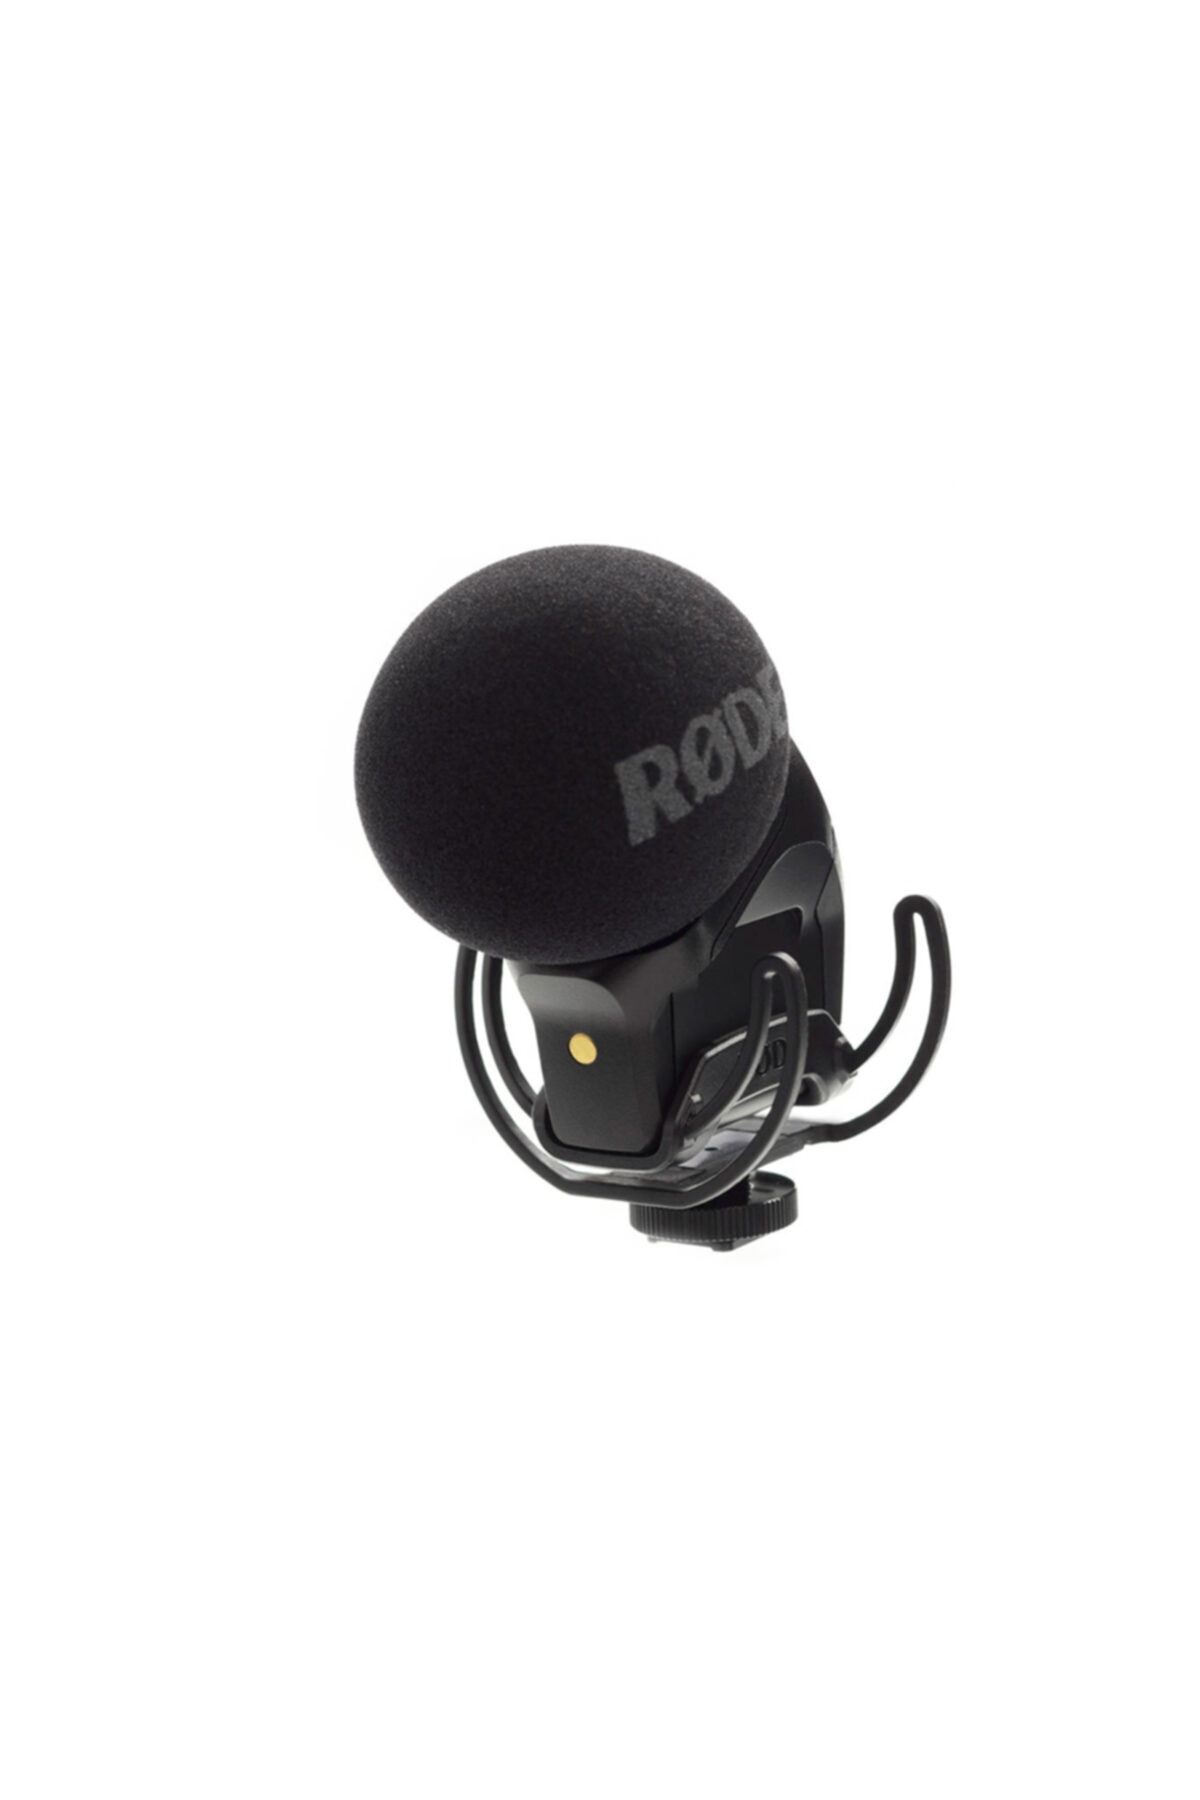 Rode Videomic Stereo Pro Rycote Mikrofon